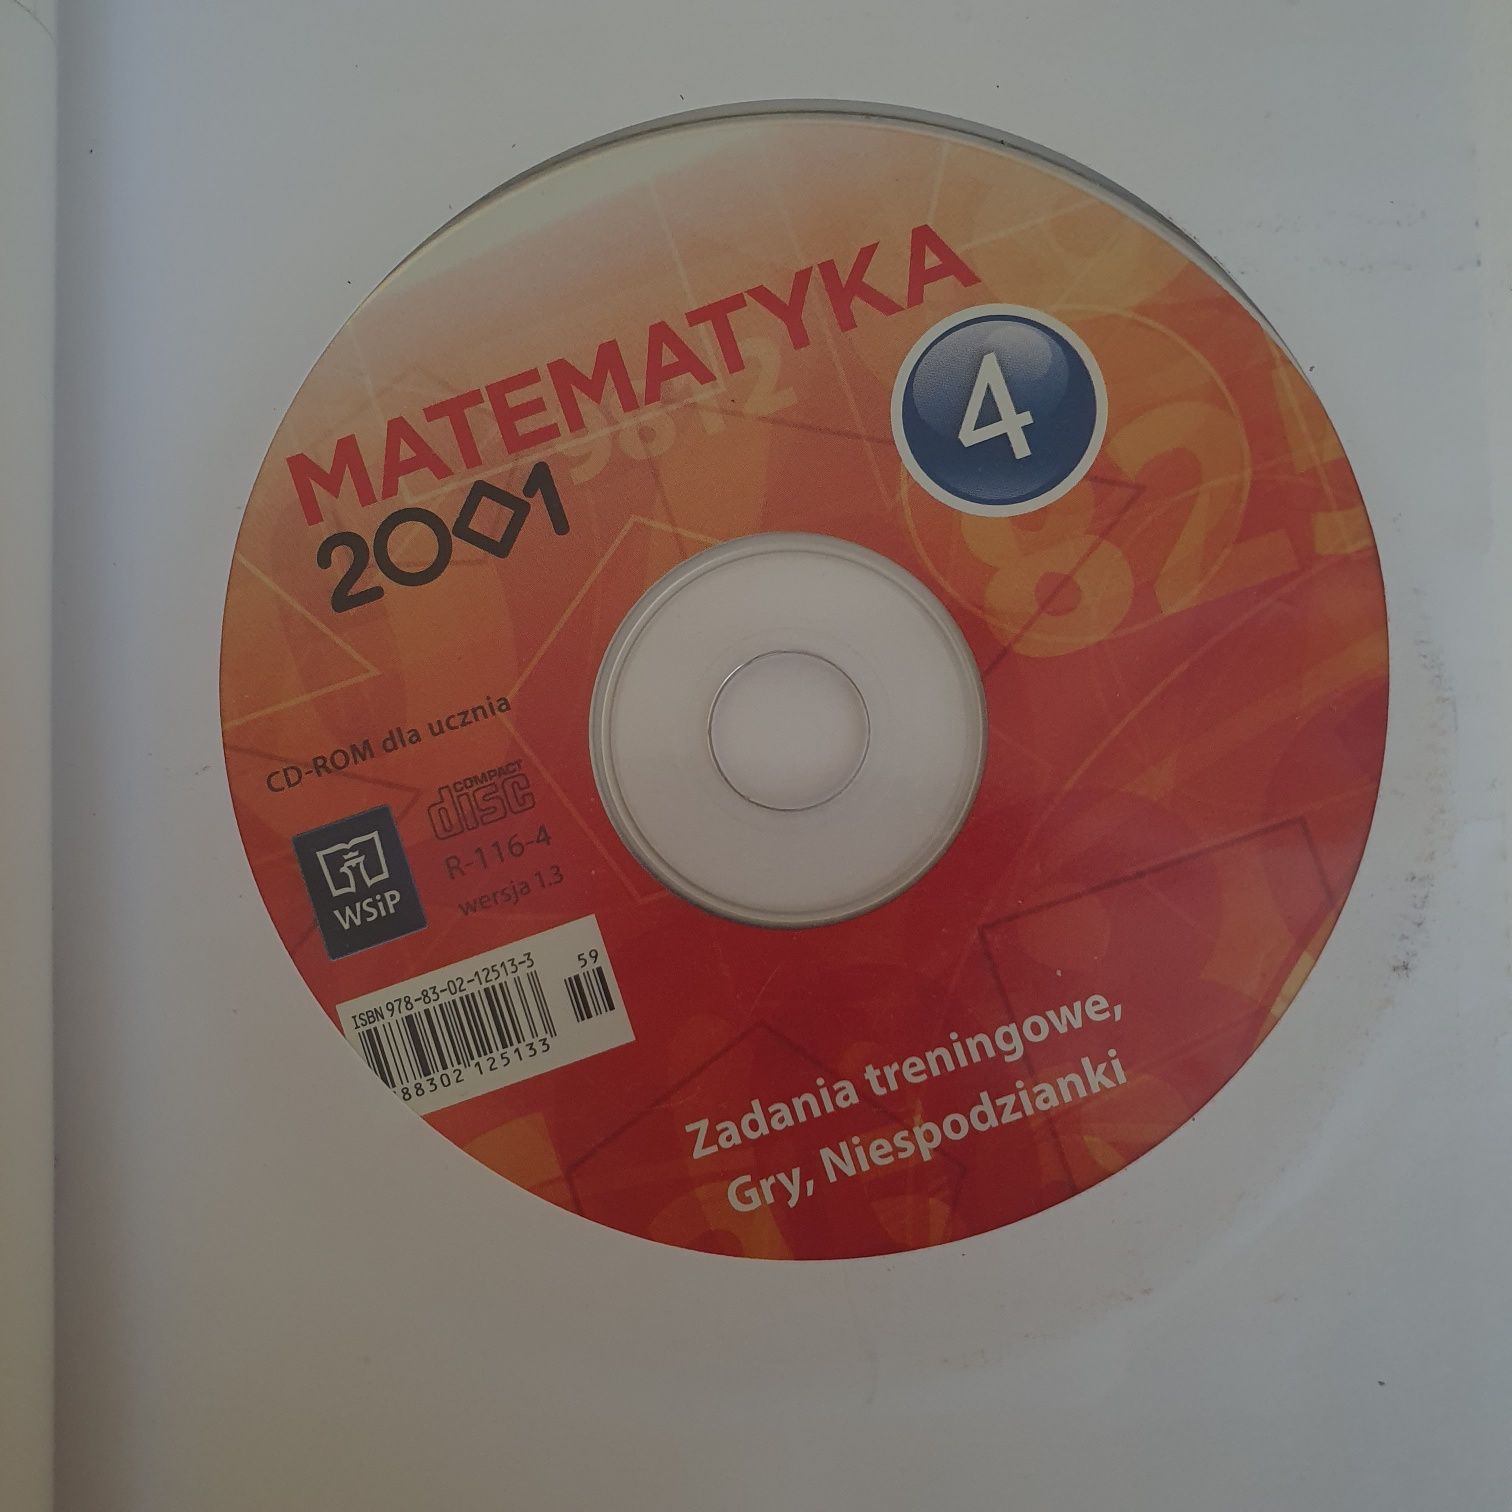 Matematyka 2001 - klasa 4